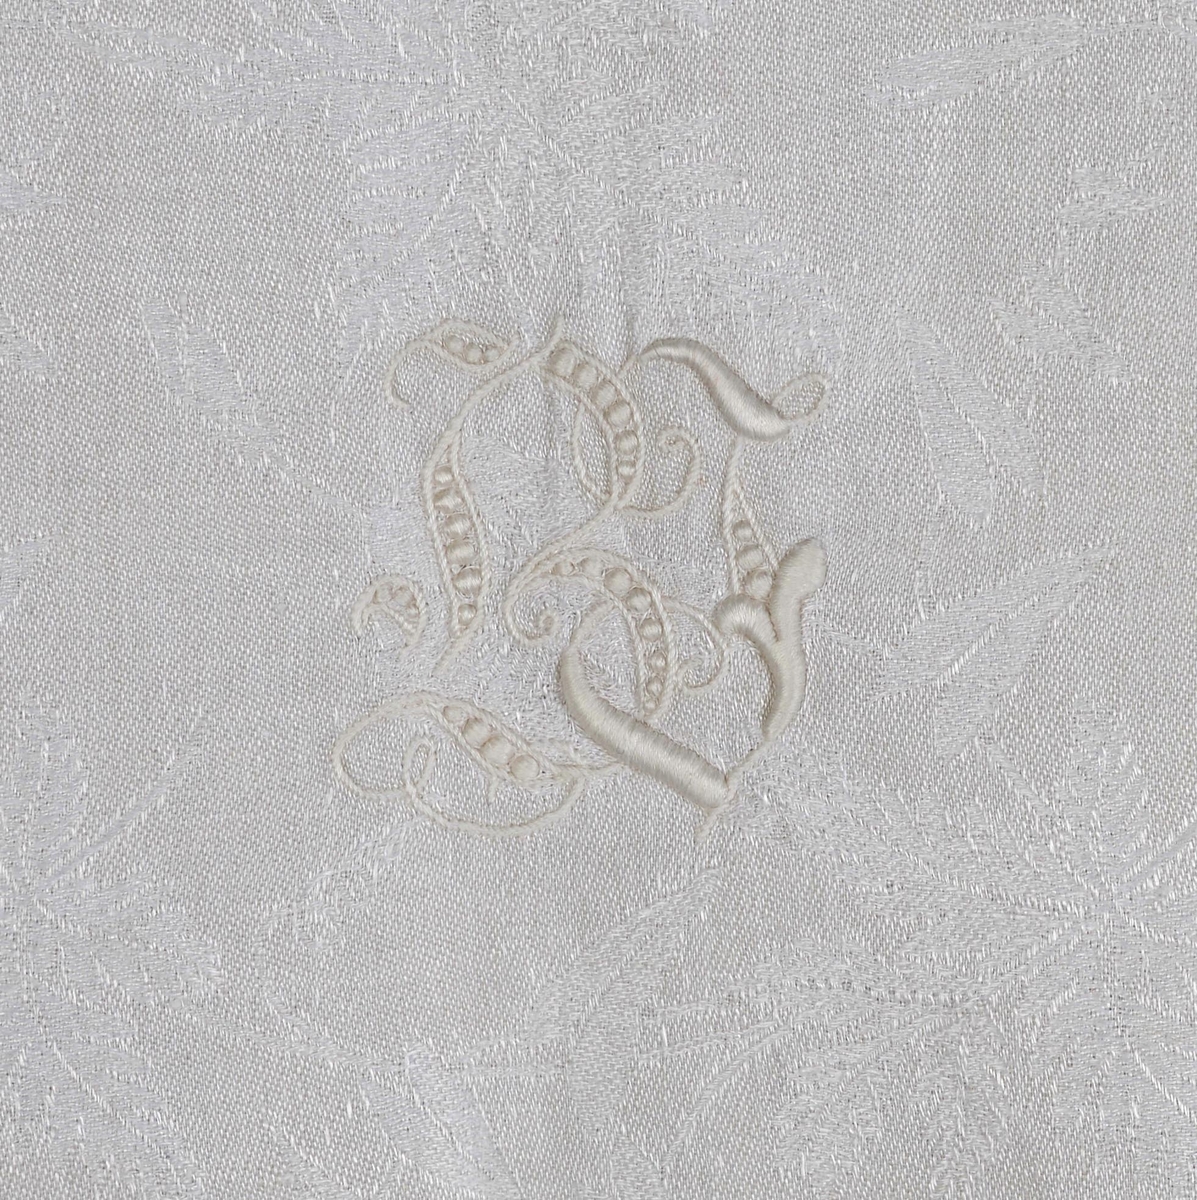 Damaskvevd pyntehåndkle med påsydd dekor av hardangerbroderi. Brodert initialene B i engelsbroderi.